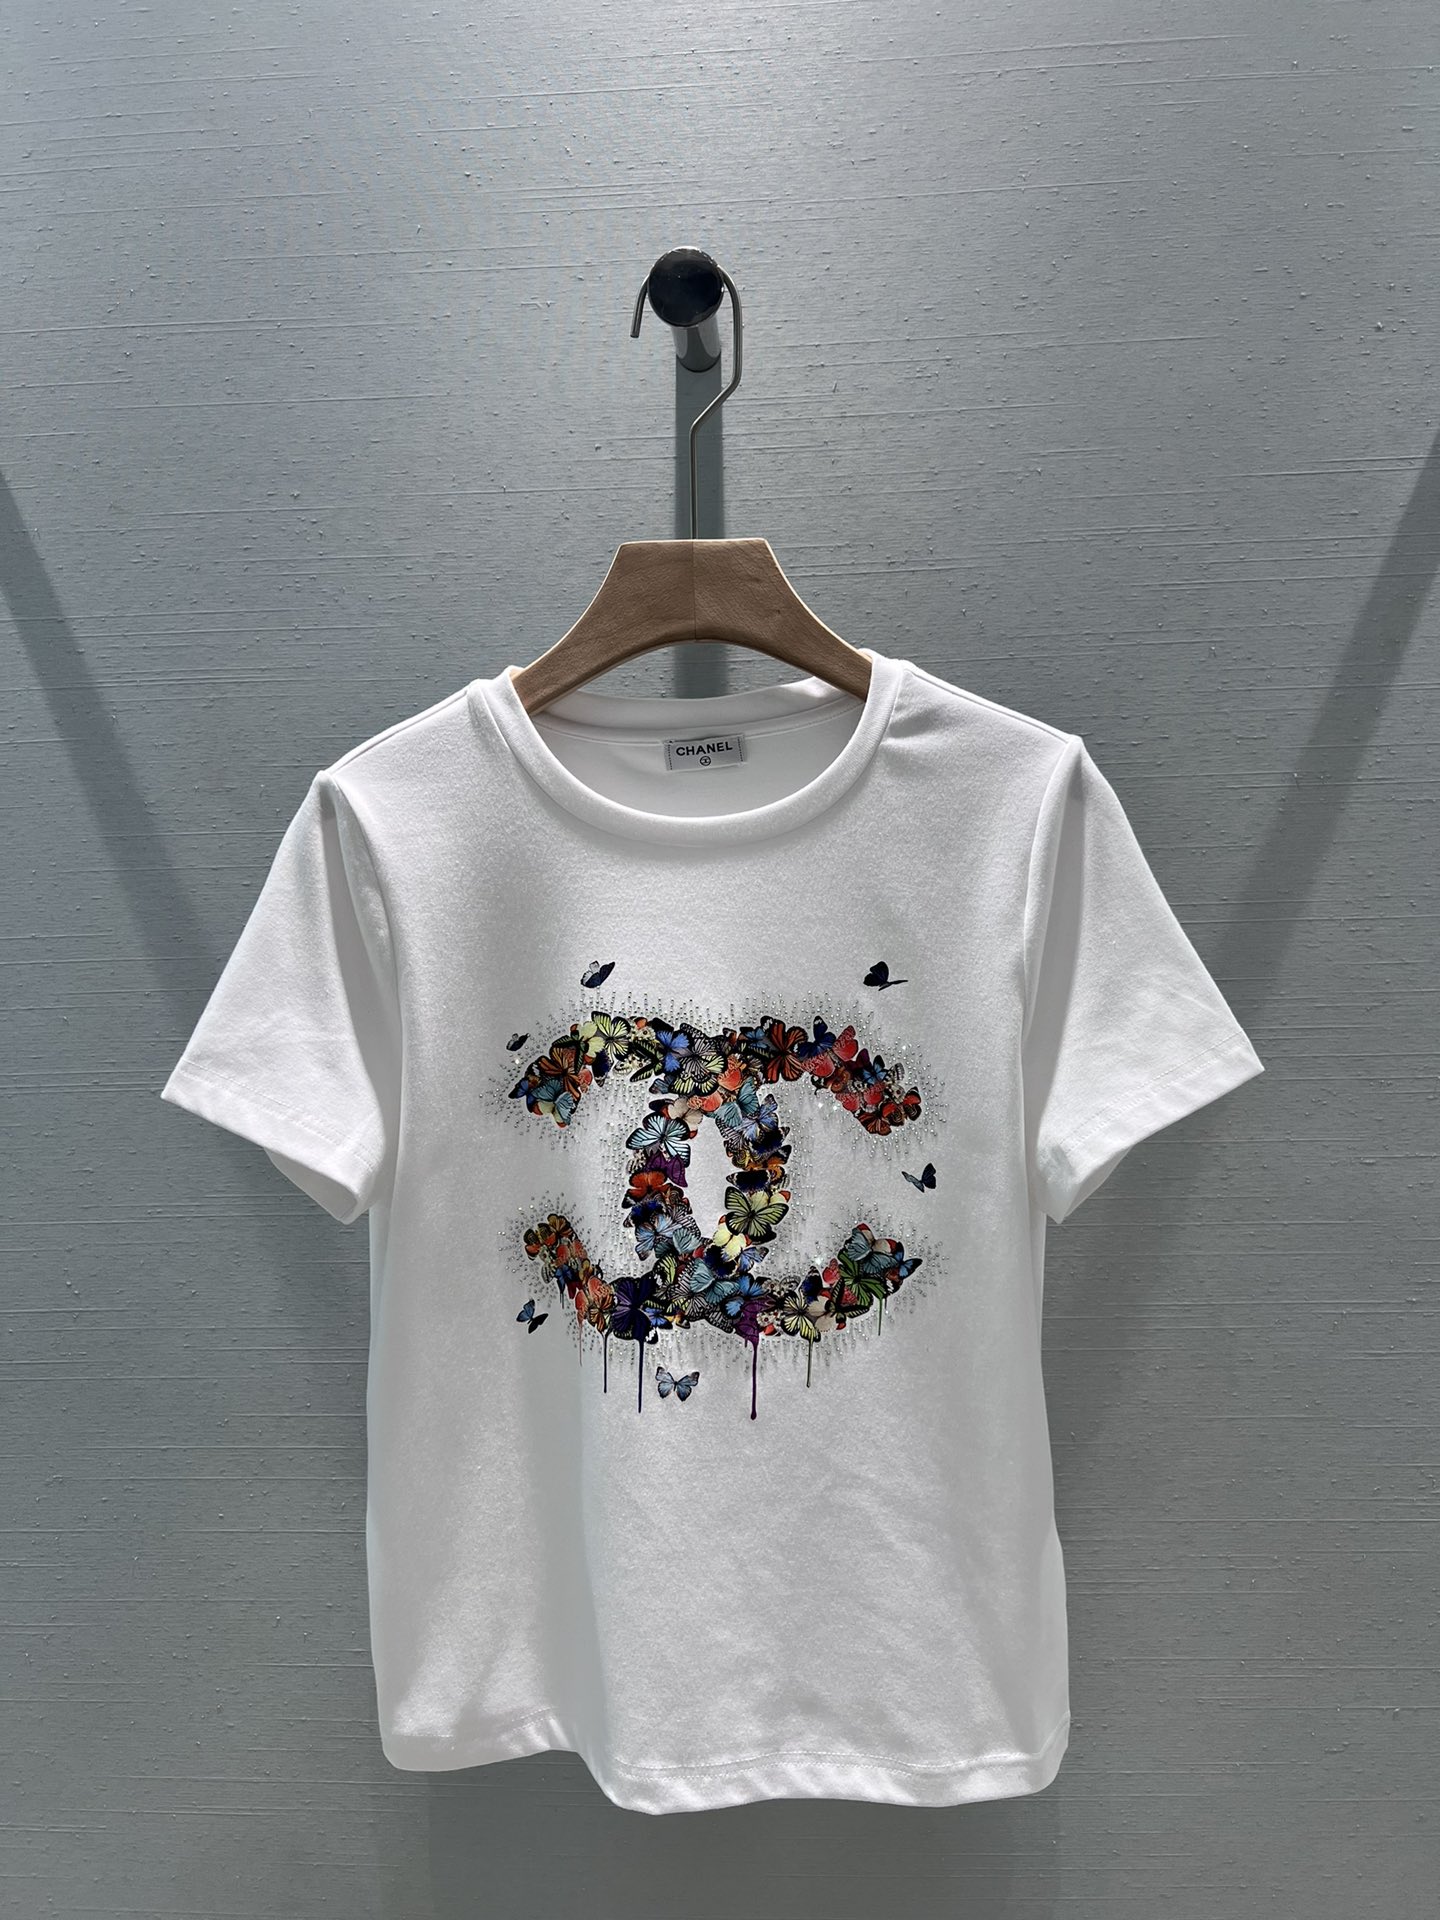 Chanel Vêtements T-Shirt Faux de meilleure qualité
 Imprimé Coton Collection printemps – été Manches courtes